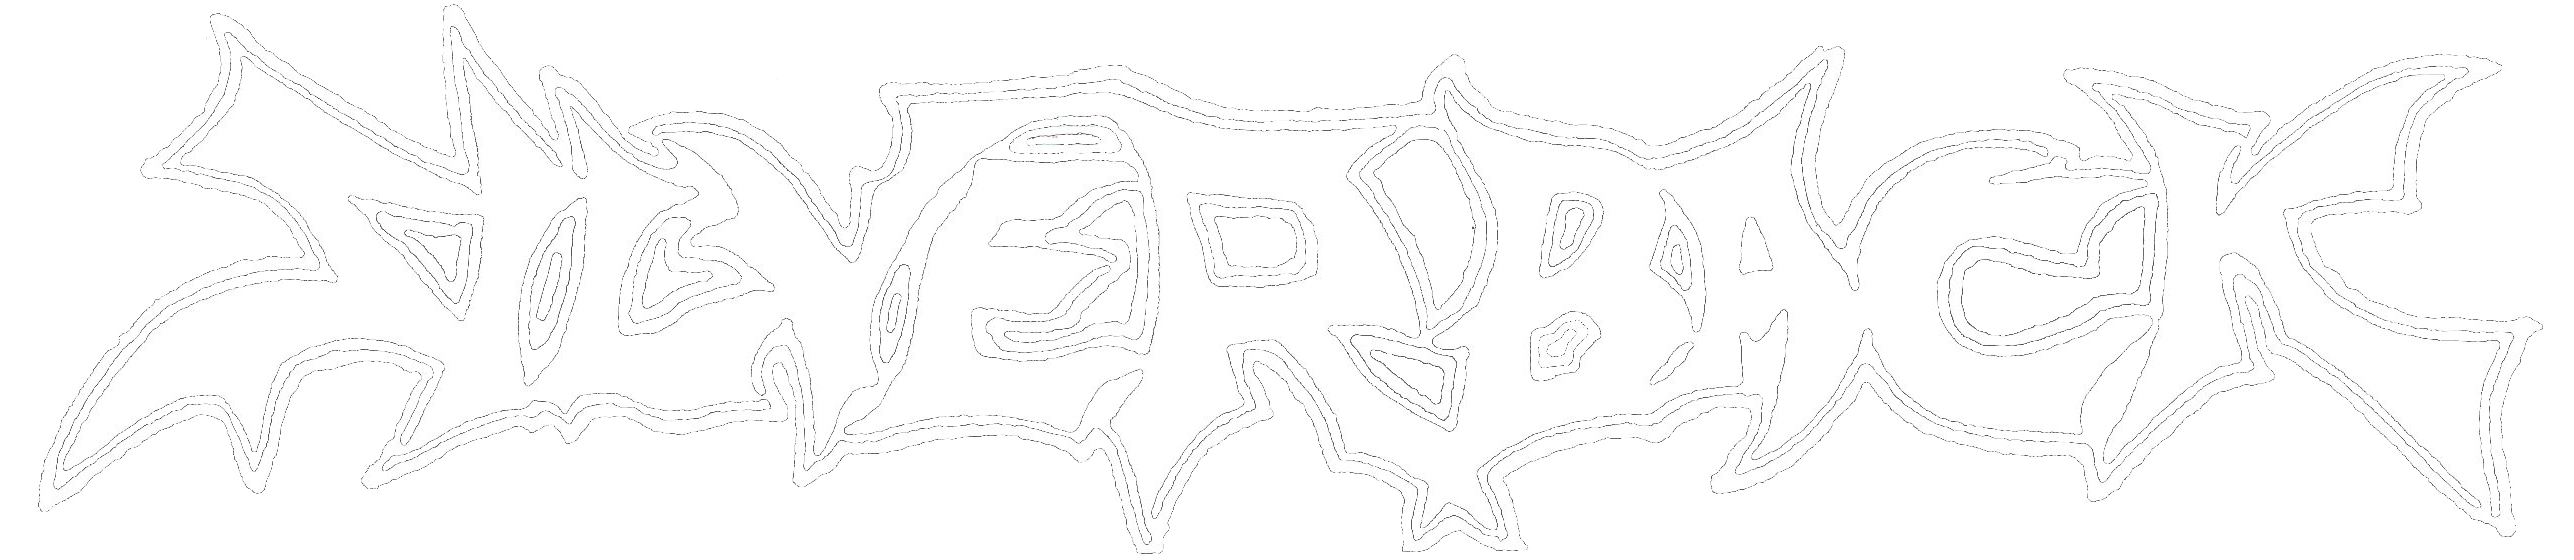 silverback-logo